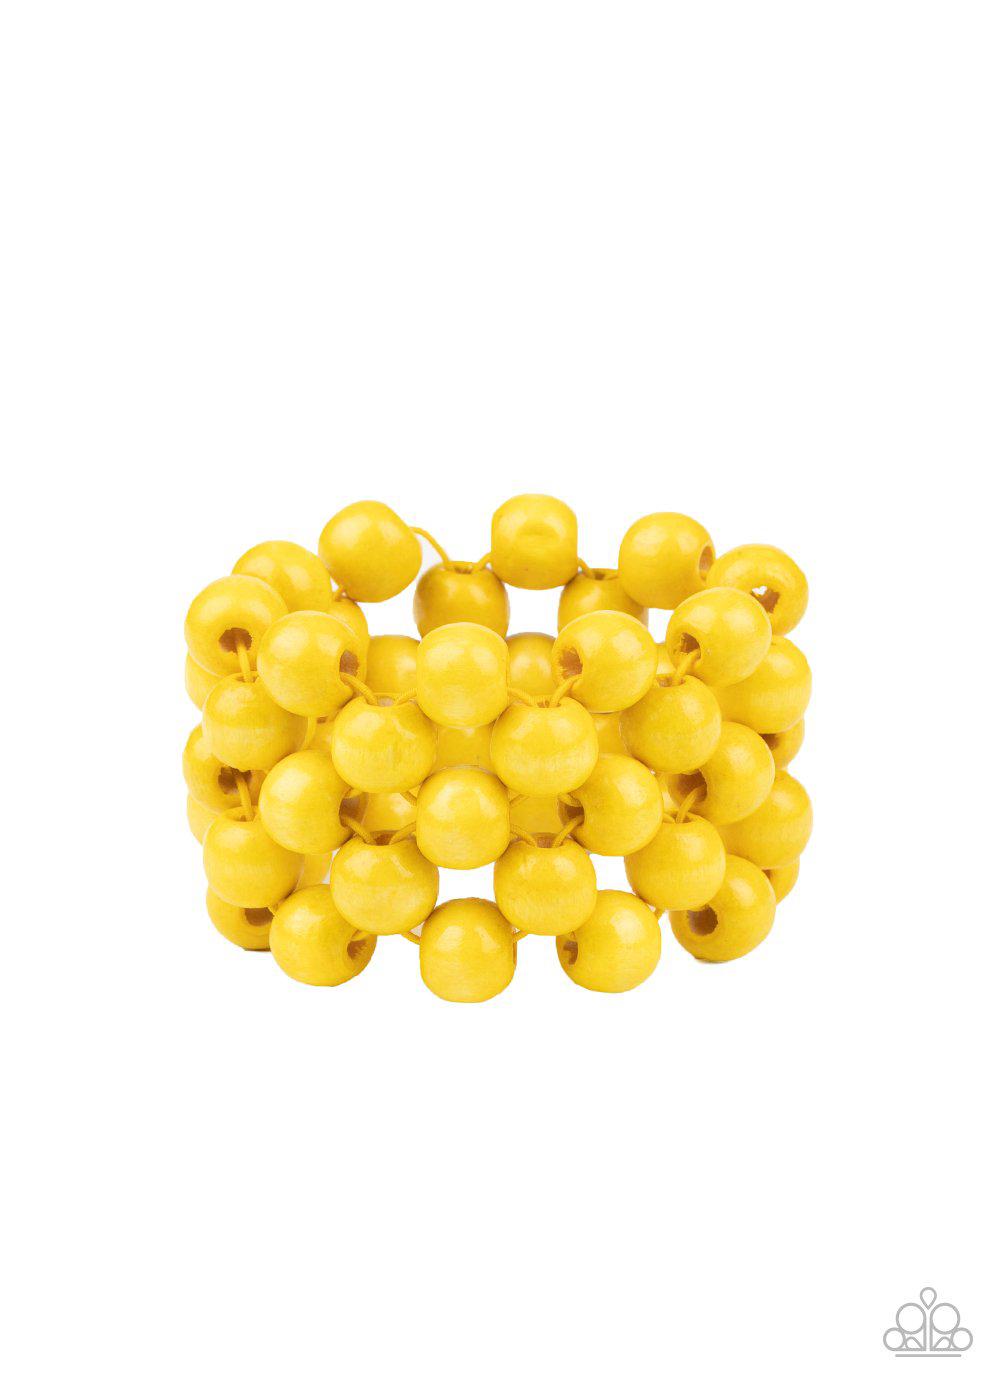 Tiki Tropicana Yellow Wood Bracelet - Paparazzi Accessories- lightbox - CarasShop.com - $5 Jewelry by Cara Jewels